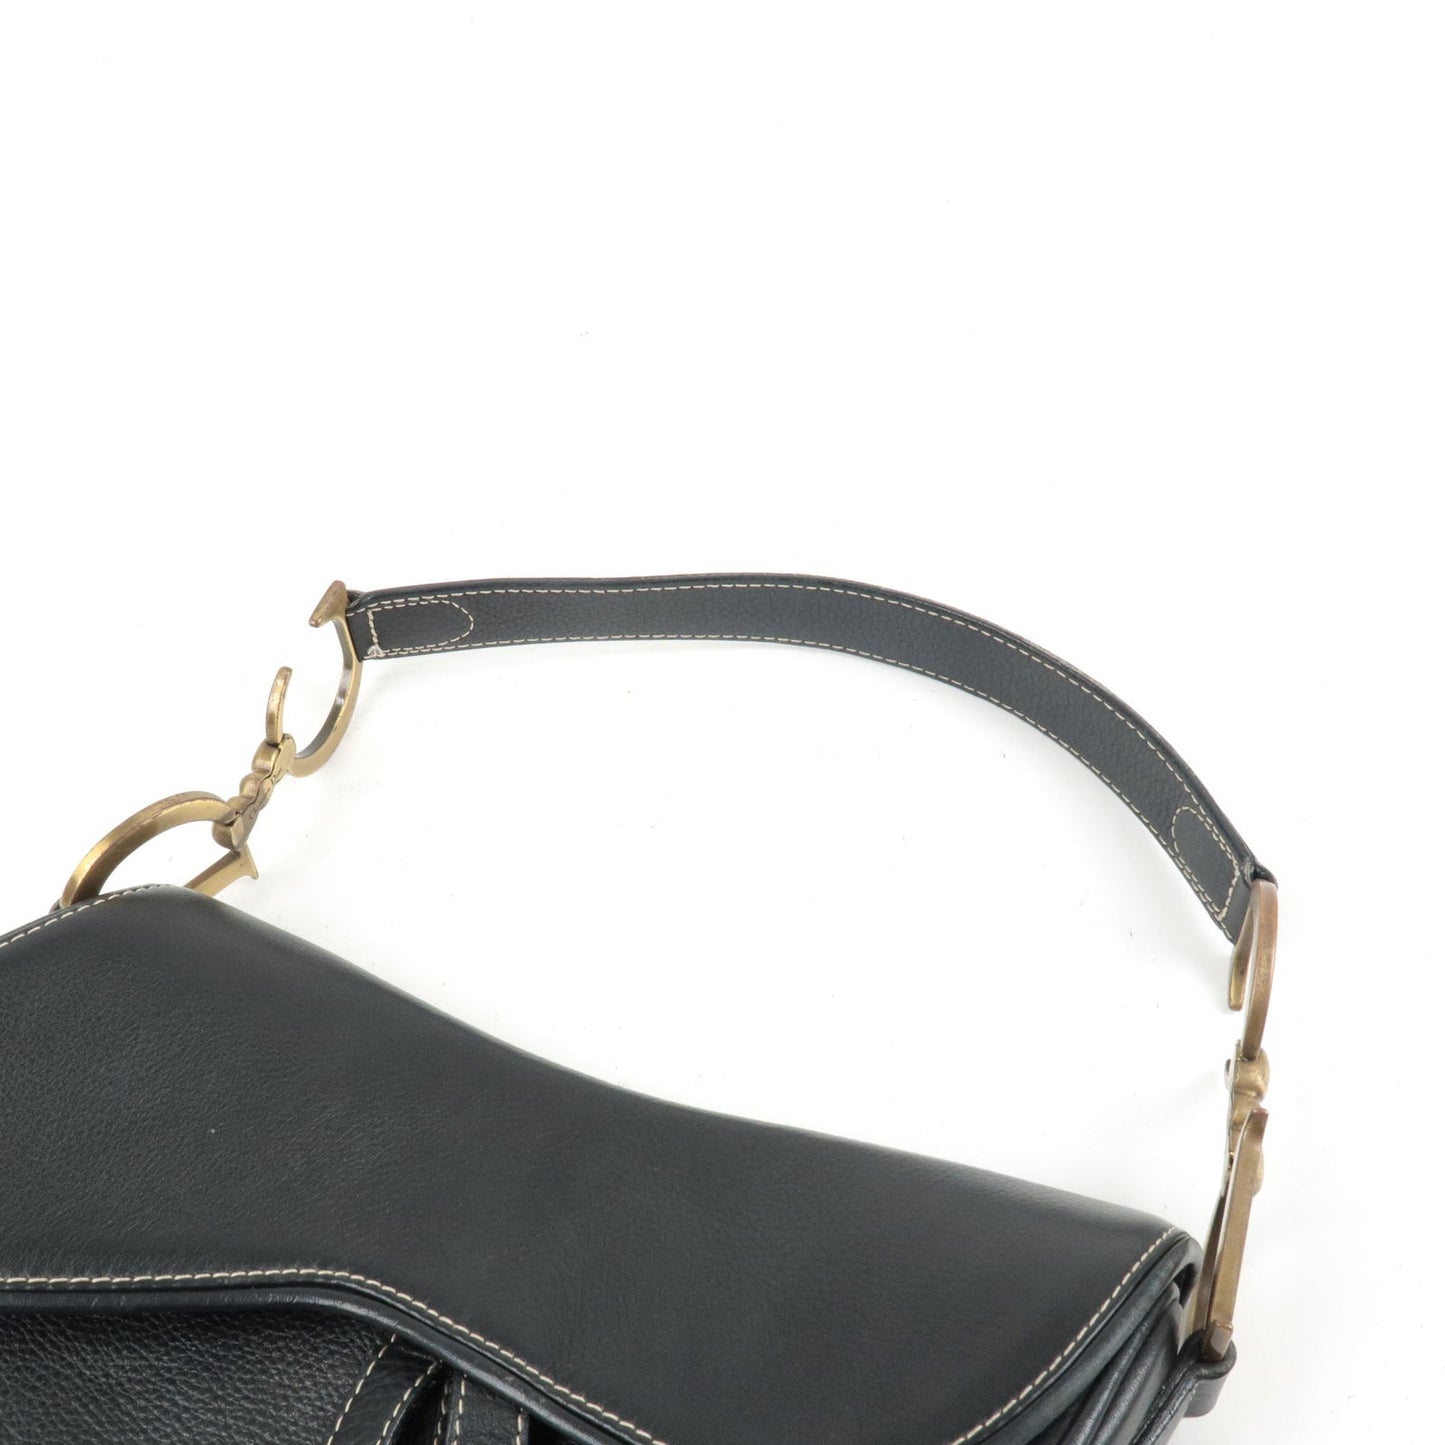 Christian Dior Leather Saddle Bag Shoulder Bag Purse Black